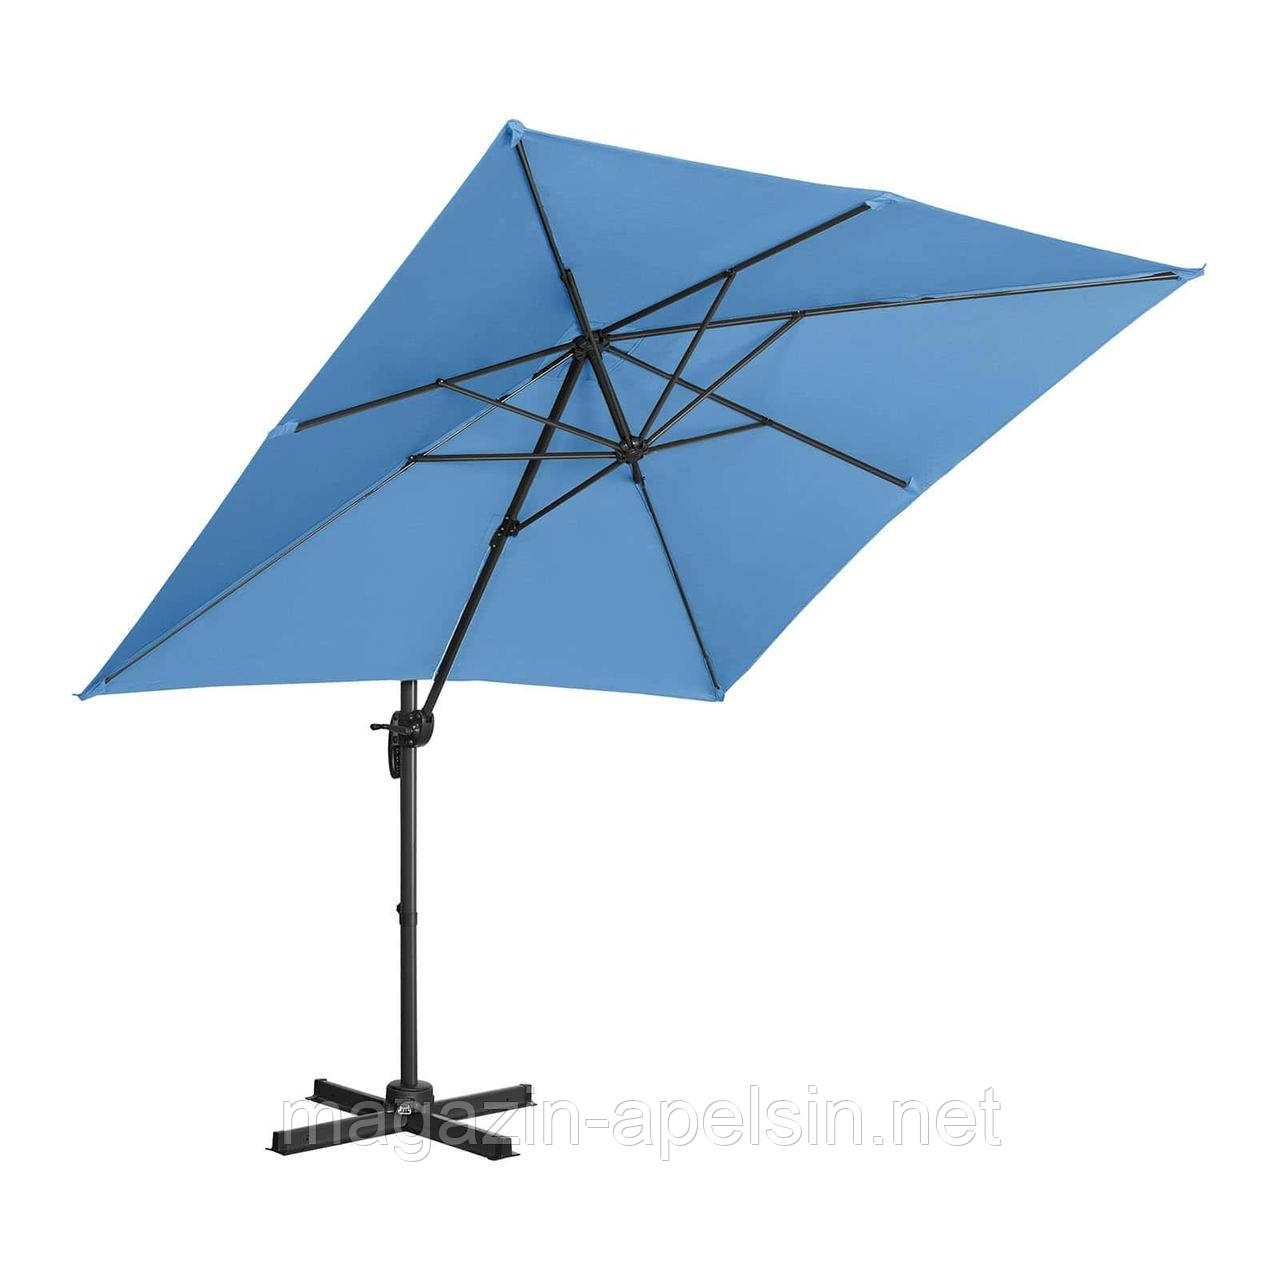 Світлофорна парасолька - синя - квадратна - 250 x 250 см - обертається, фото 1